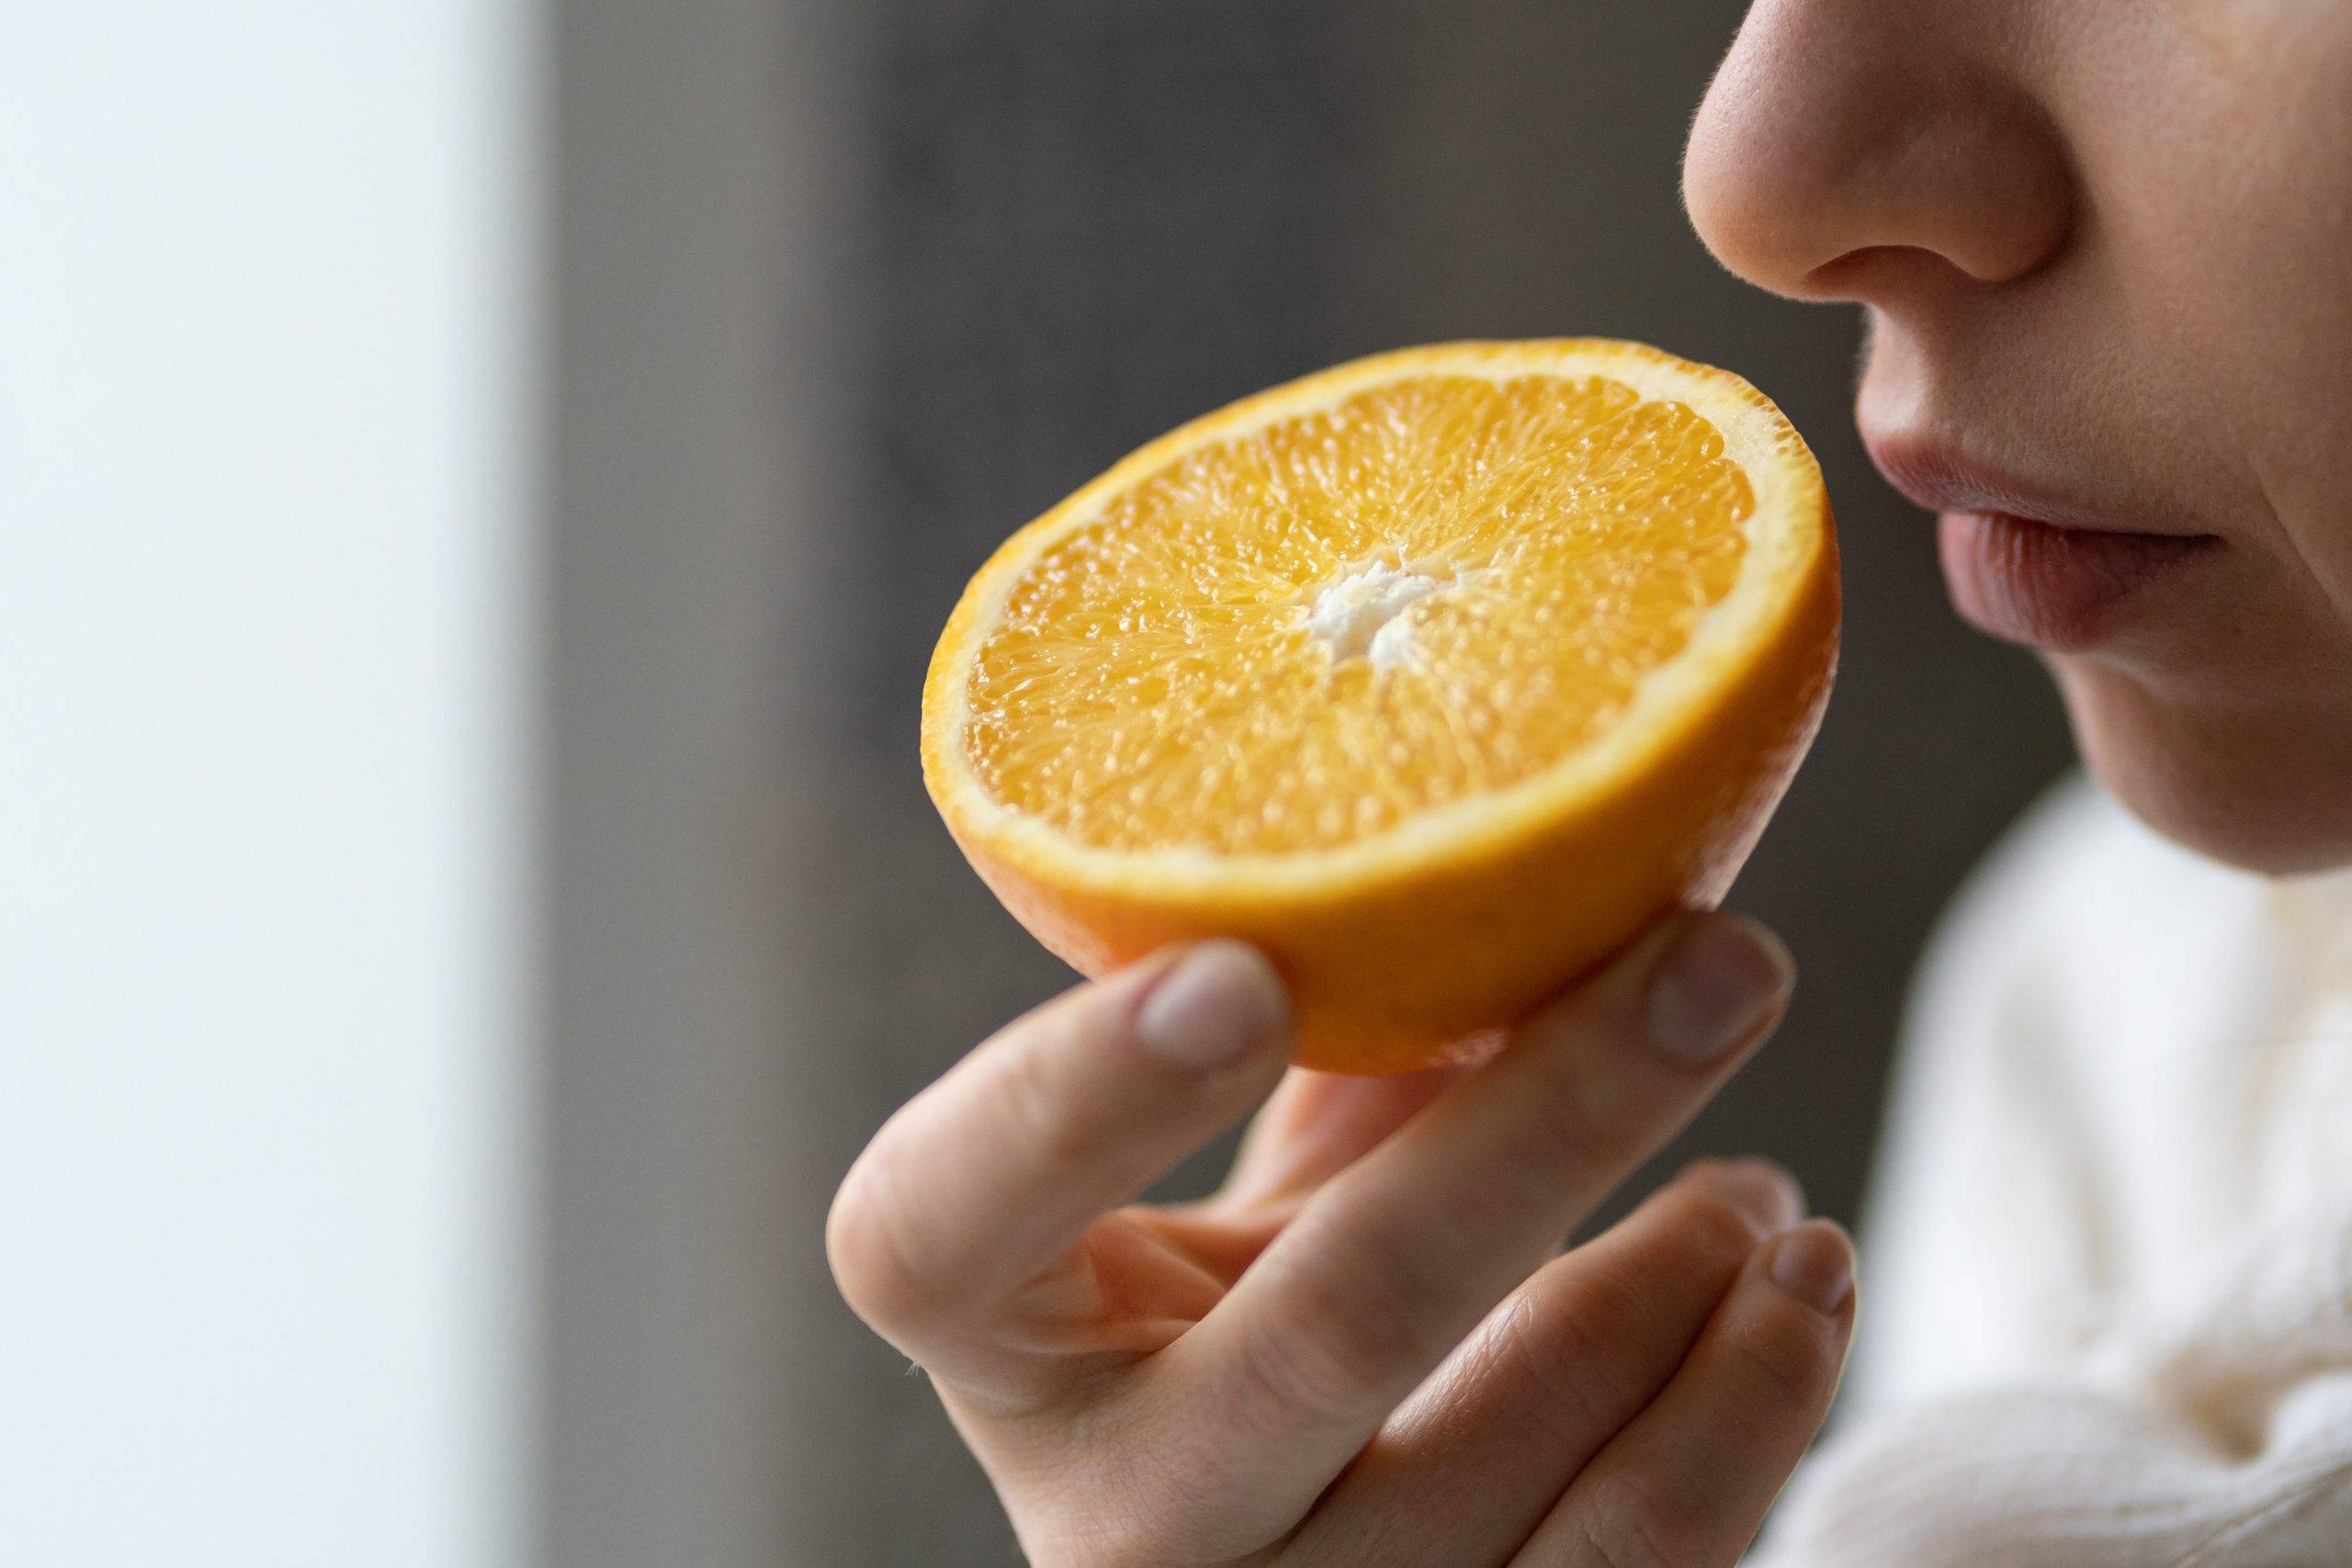 Trening węchowy - jak go stosować po przejściu choroby COVID-19? Kobieta wącha przekrojoną połówkę pomarańczy.